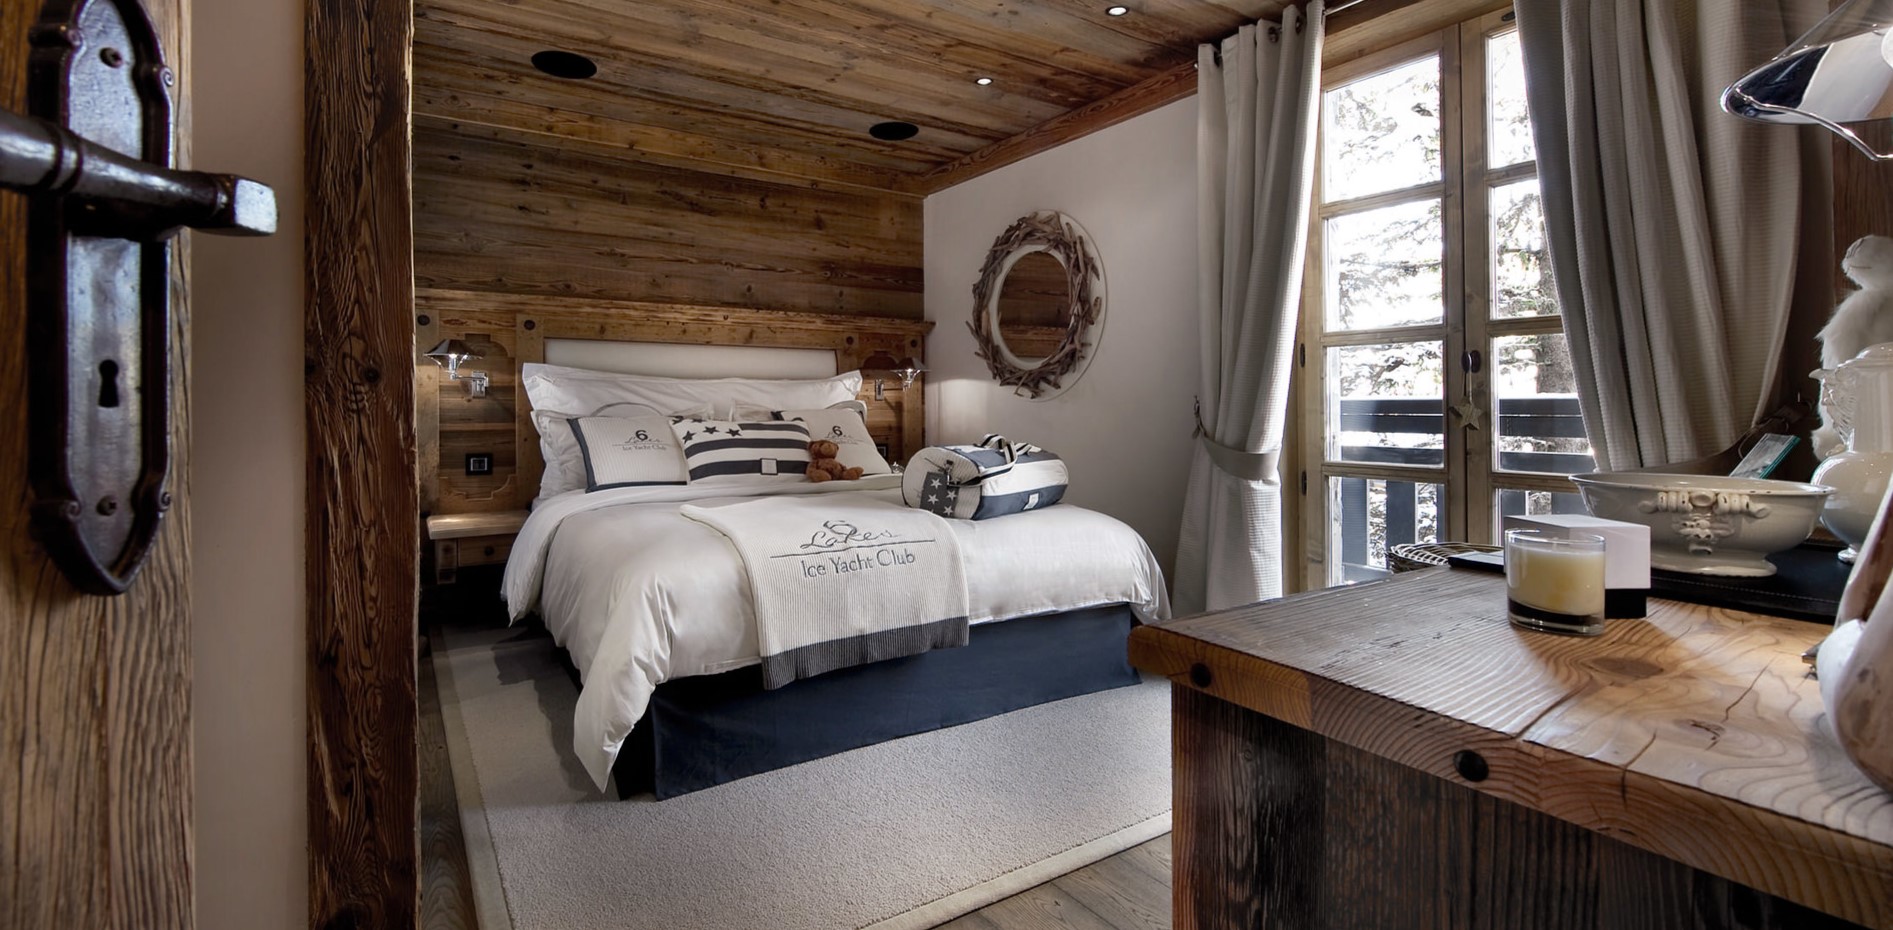 Двуспальная кровать с деревянным изголовьем